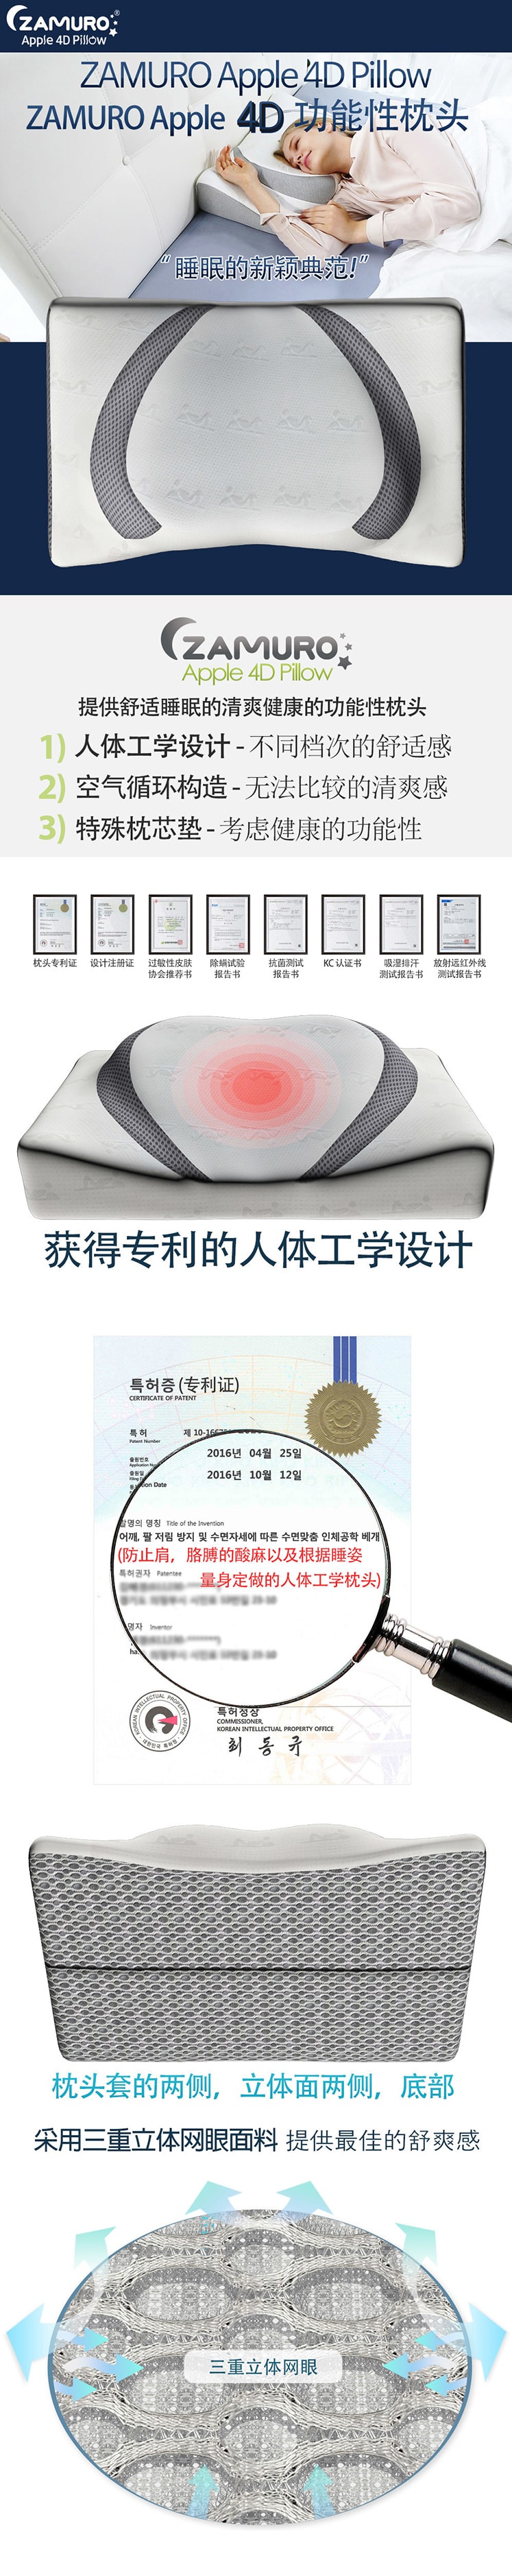 韓國 ZAMURO蘋果4D人體工學頸椎功能記憶泡沫枕頭 1 件